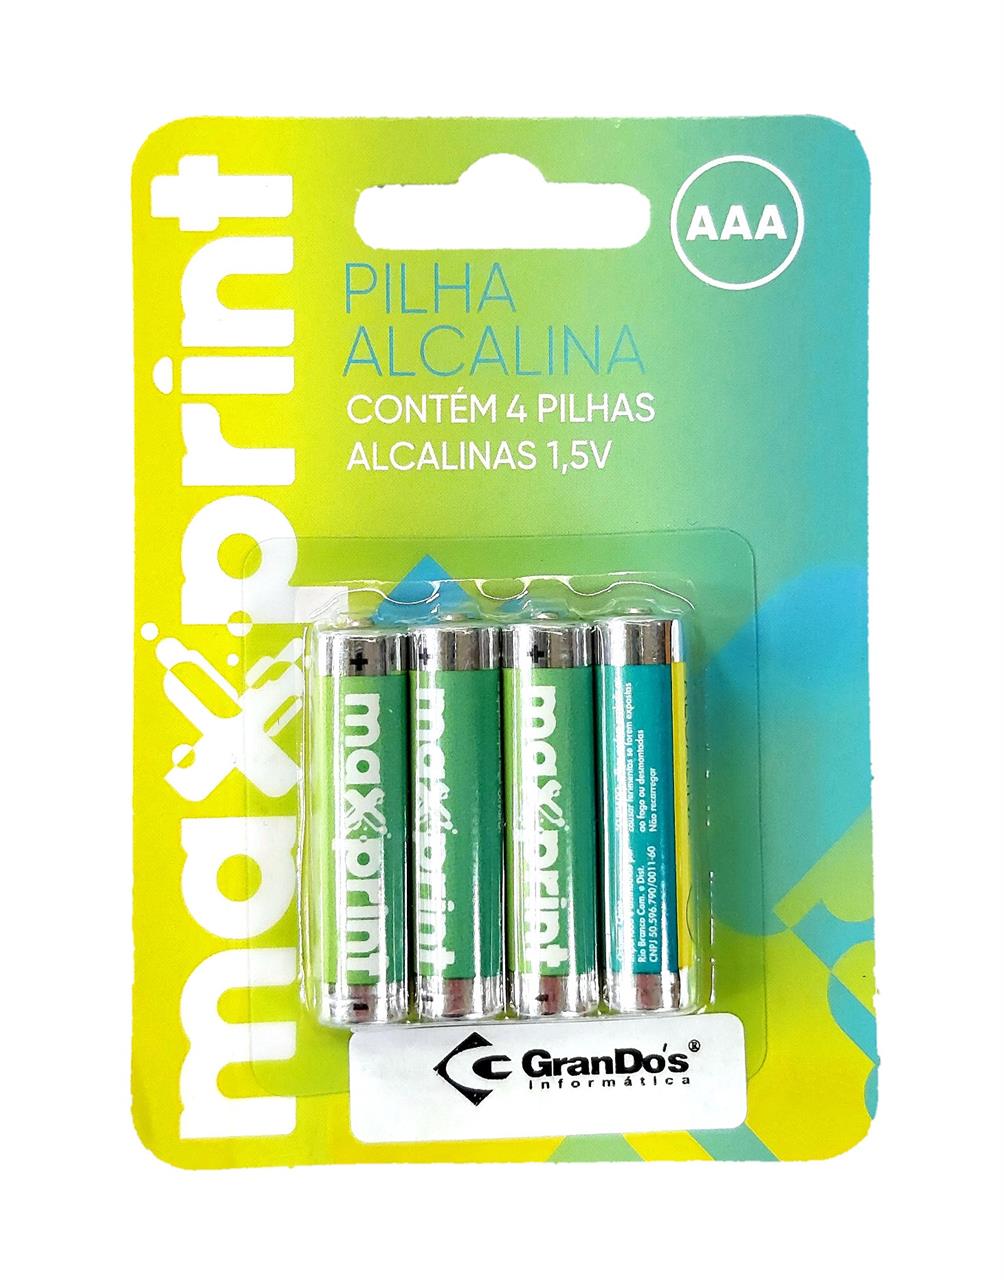 Pilhas e Baterias - Pilha Alcalina AAA 1,5V com 4